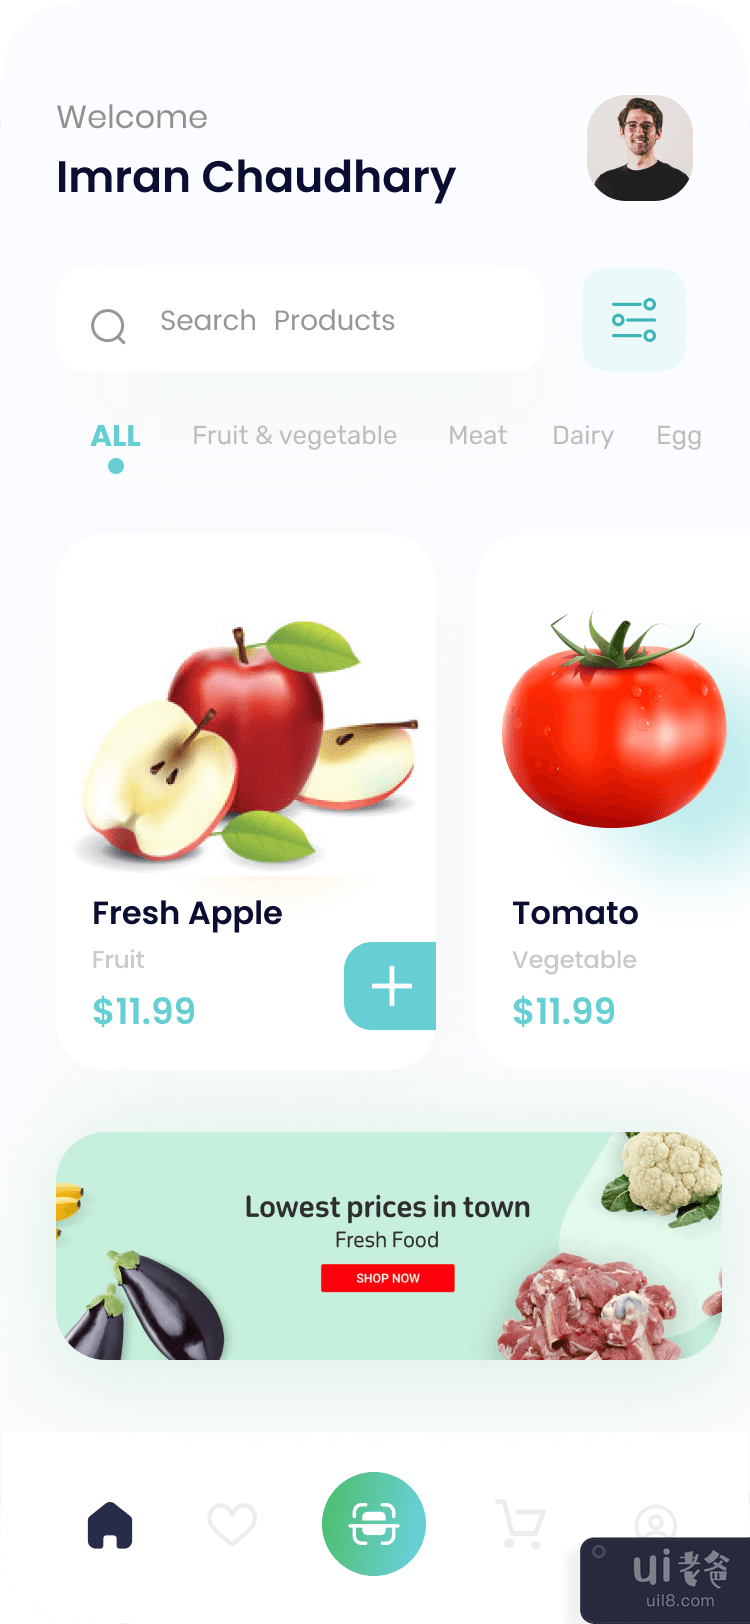 杂货应用程序 iOS 移动 UI 套件 - 食品配送应用程序(Grocery app iOS Mobile UI Kits - Food Delivery App)插图3